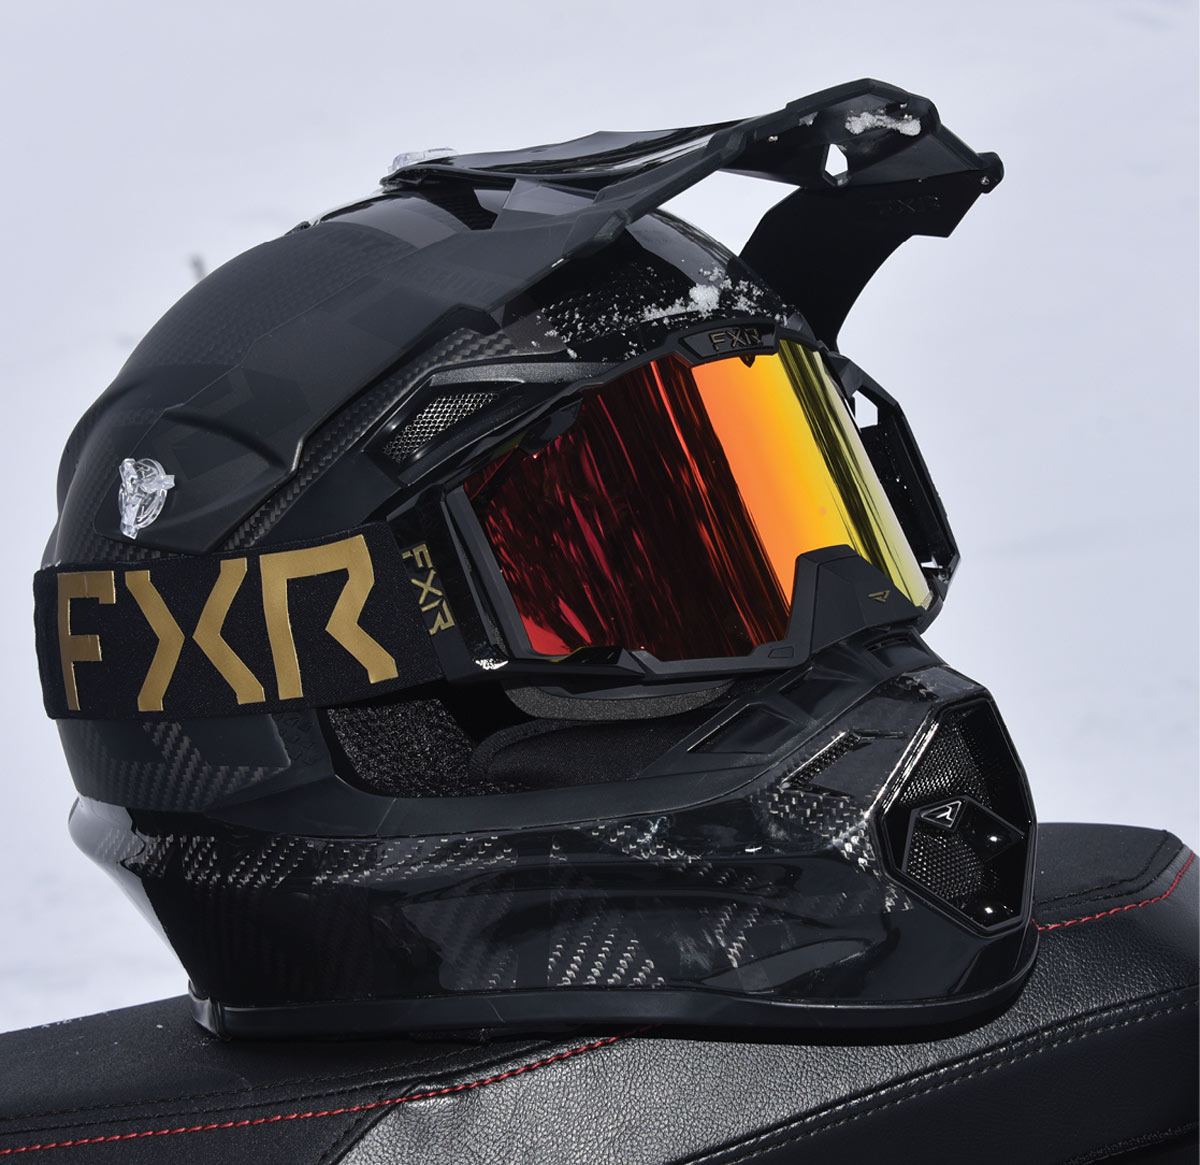 FXR goggles on helmet